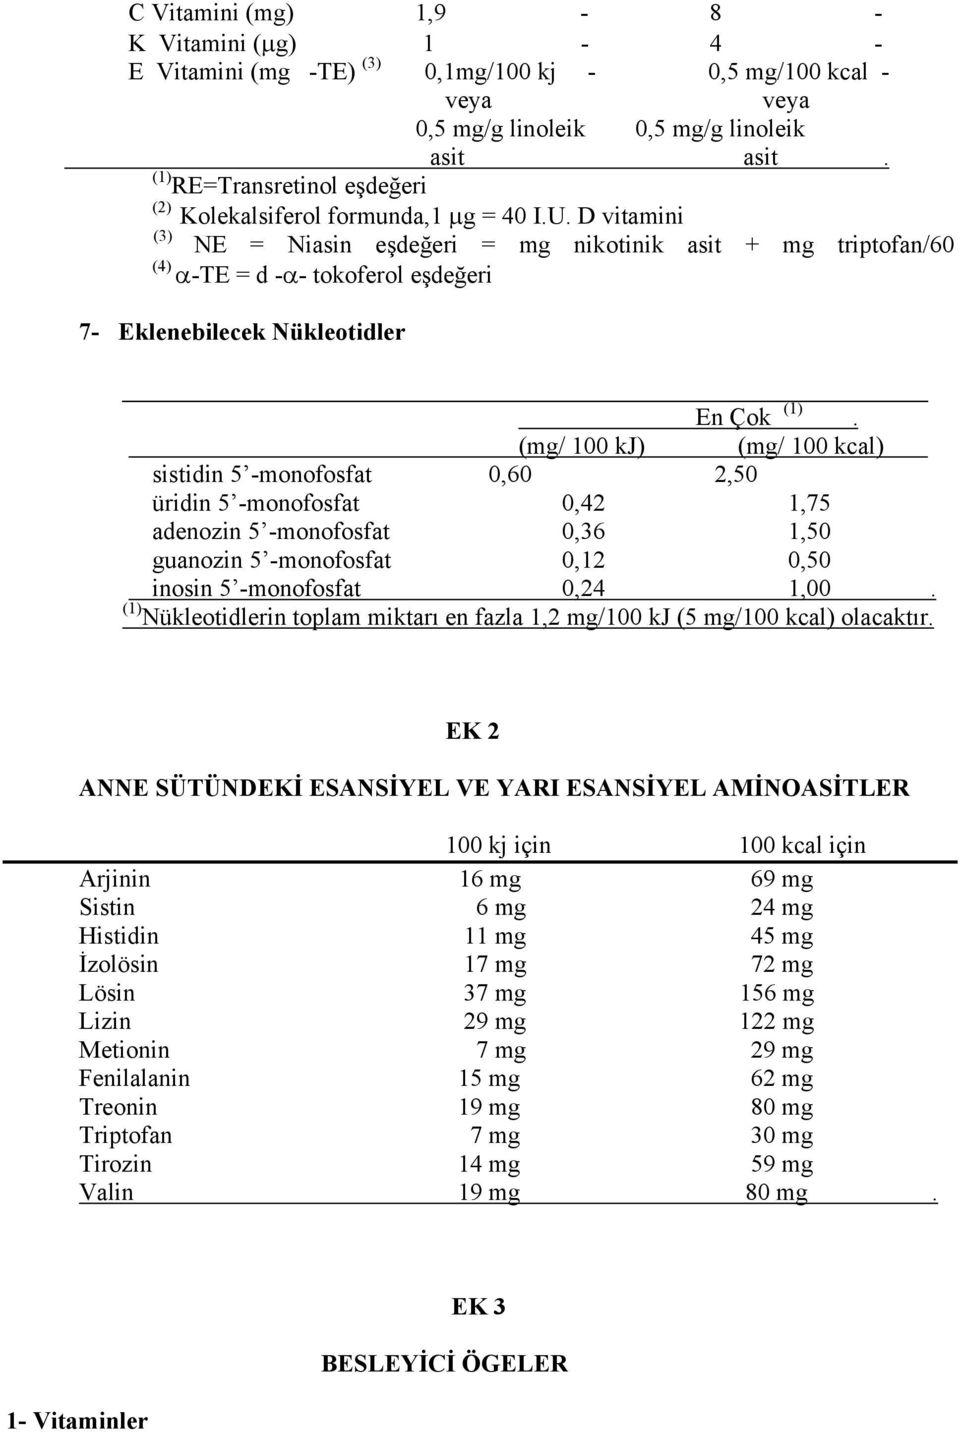 D vitamini (3) NE = Niasin eşdeğeri = mg nikotinik asit + mg triptofan/60 (4) α-te = d -α- tokoferol eşdeğeri 7- Eklenebilecek Nükleotidler (1).